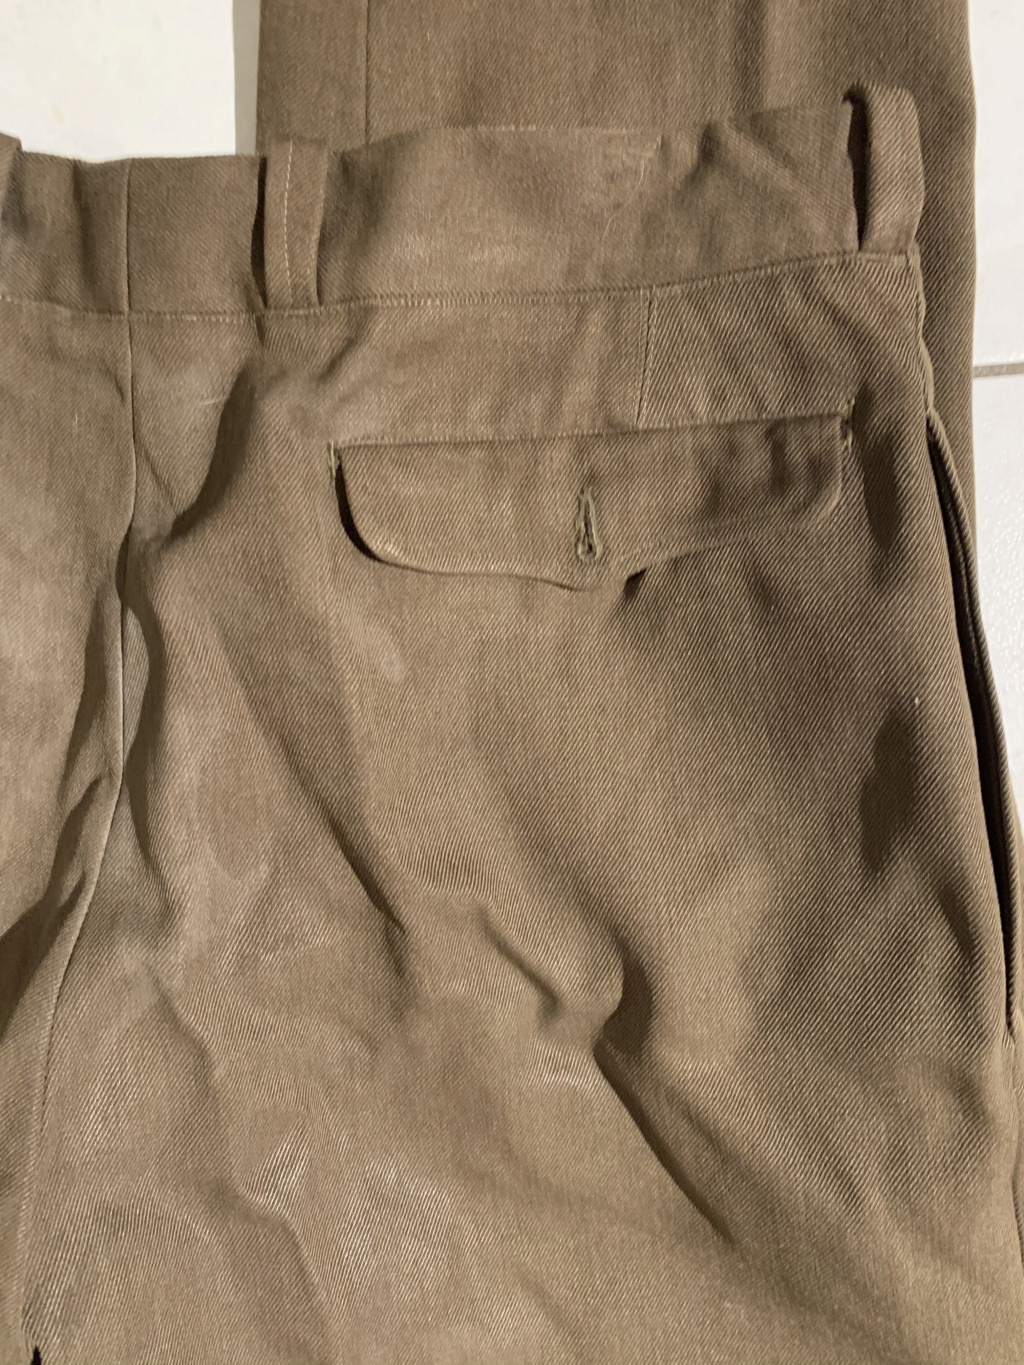 Pantalons militaire ? 105a4f10